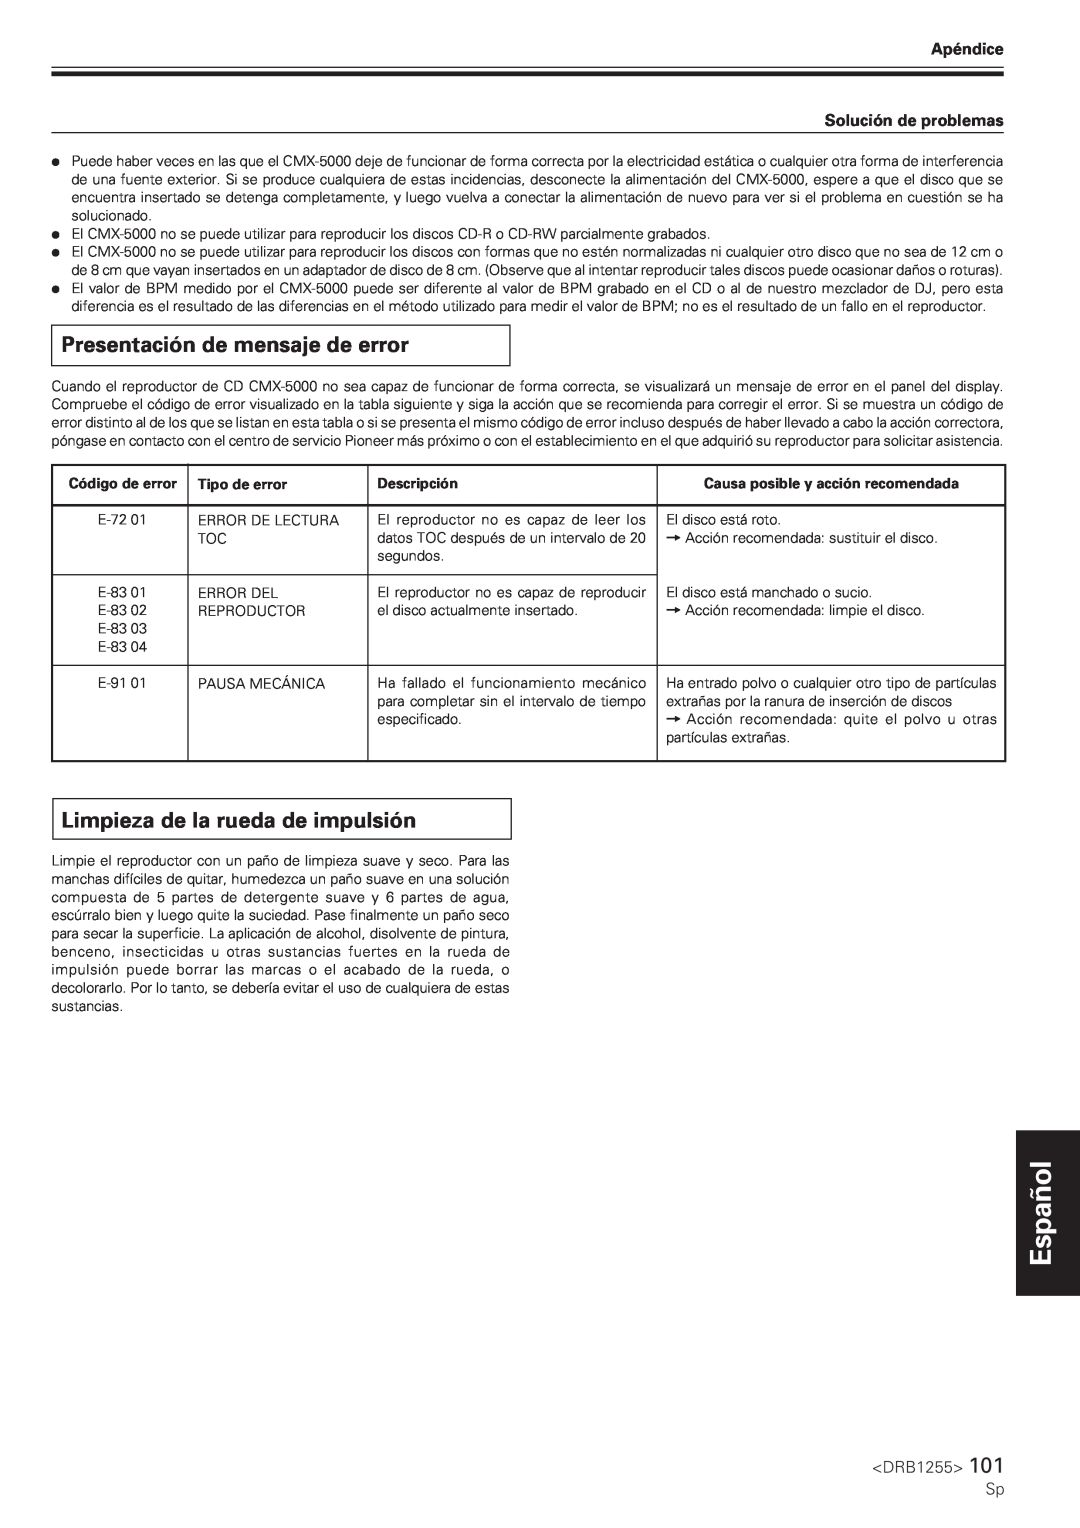 Pioneer CMX-5000 manual Presentación de mensaje de error, Limpieza de la rueda de impulsión, Español Nederlands 